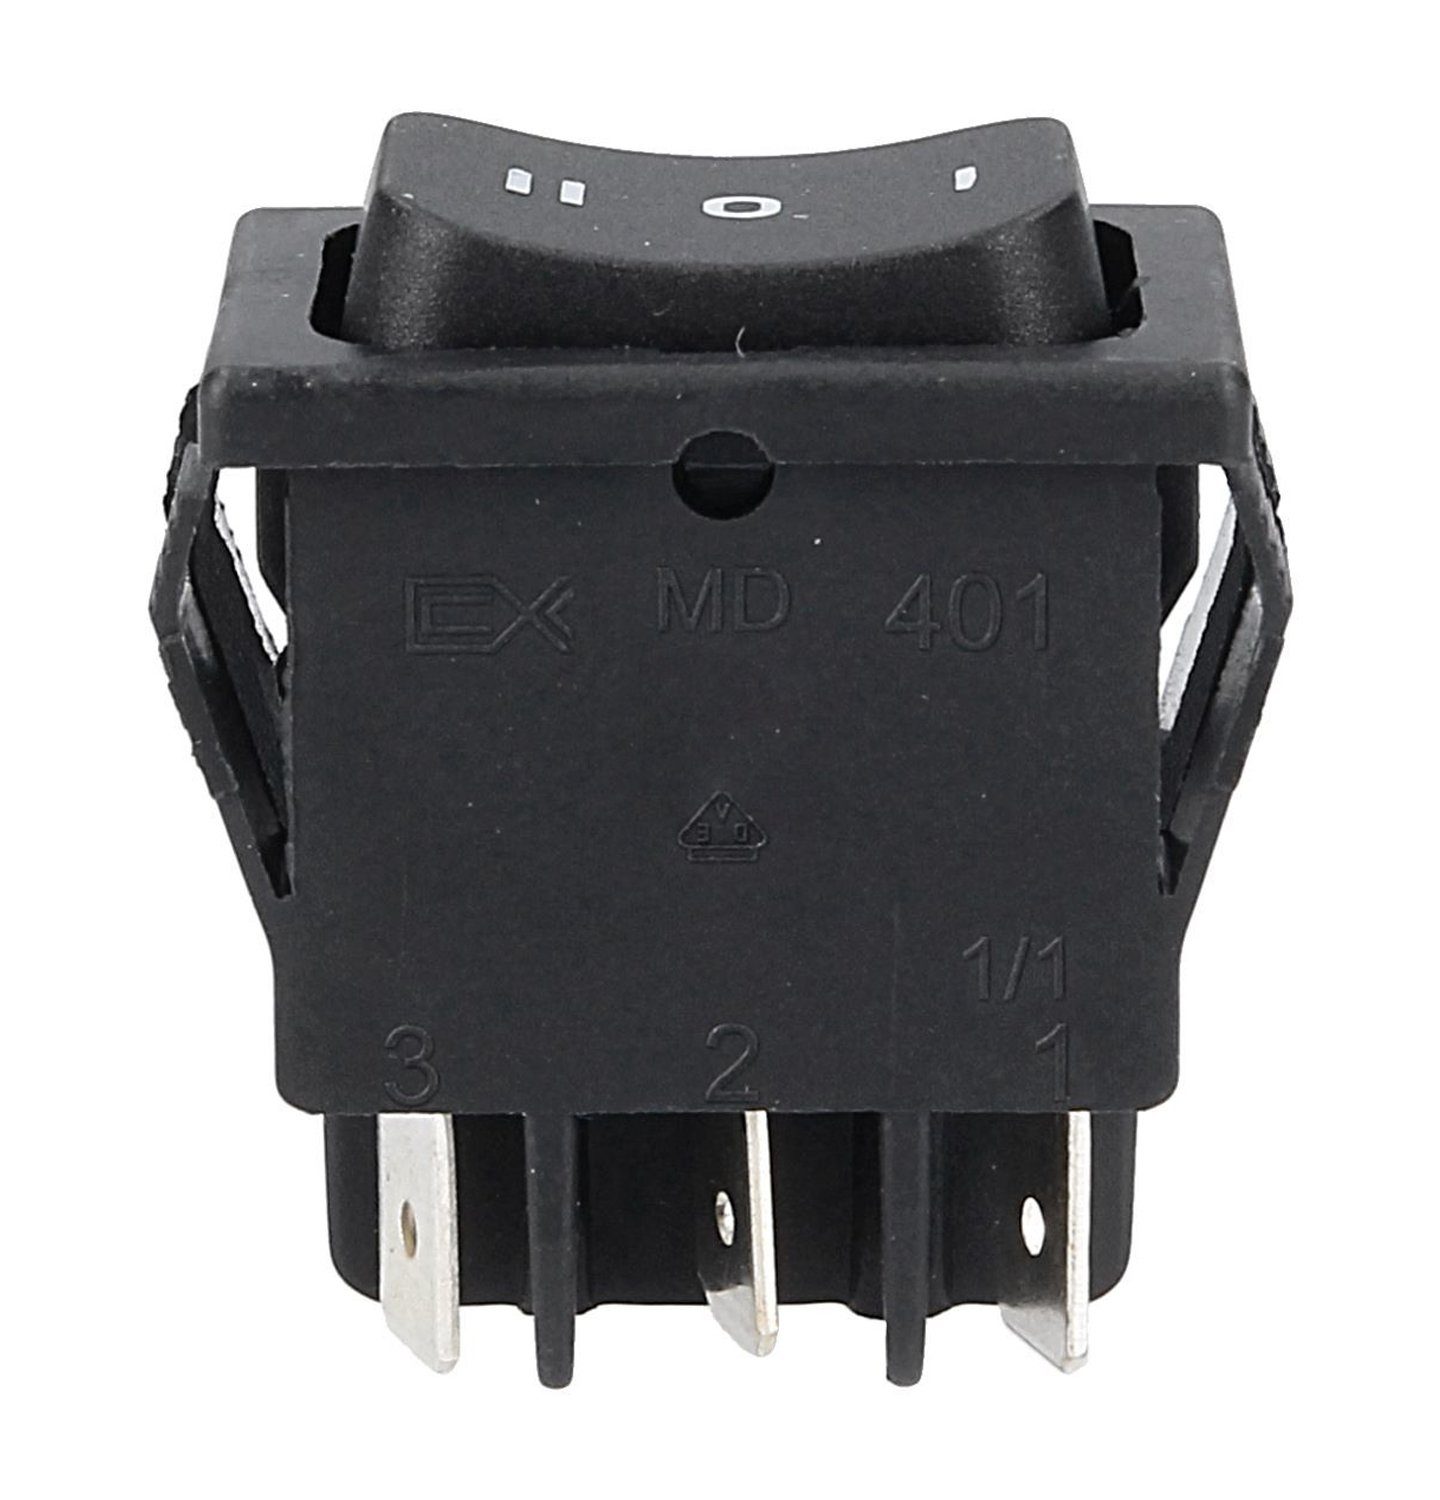 VIOKS Schalter Wippschalter, 1 - 0 - 2 Schaltfolge 32x22mm Einbaumaß  schwarz für Kleingeräte